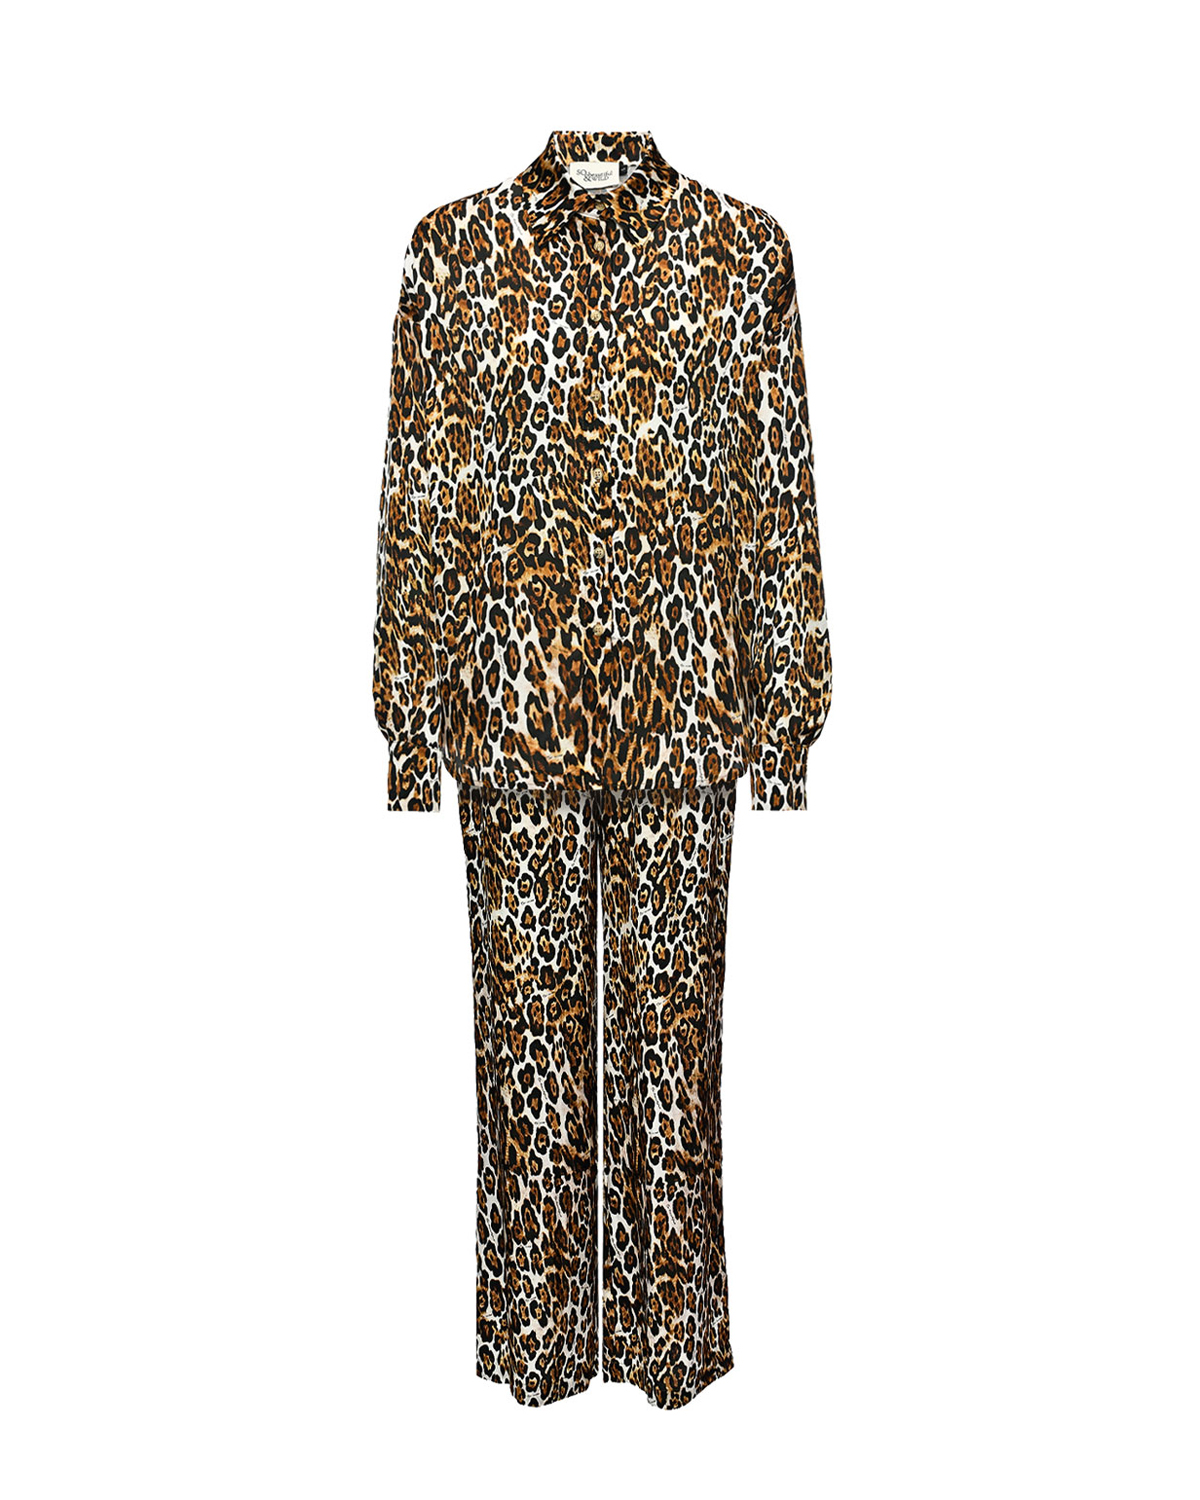 Комплект: рубашка и брюки в пижамном стиле, леопард SO BEAUTIFUL&WILD